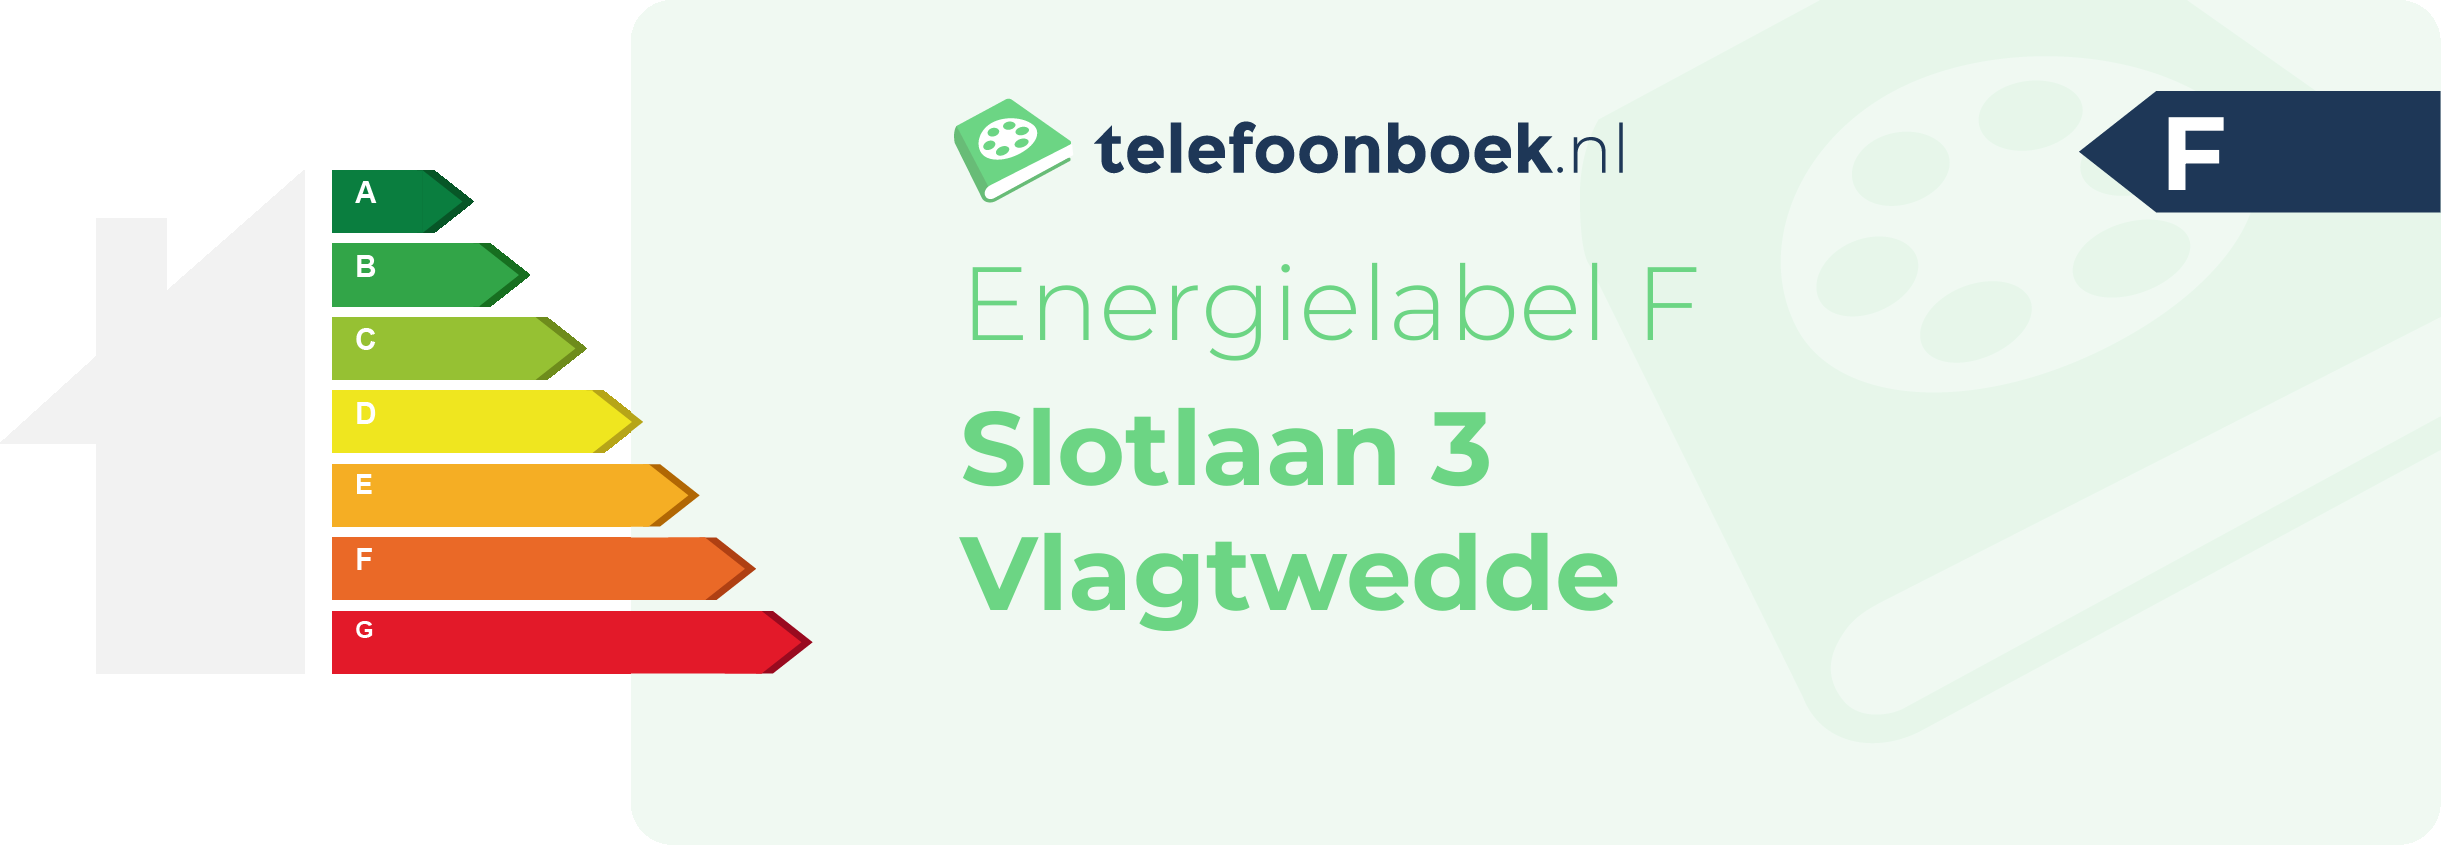 Energielabel Slotlaan 3 Vlagtwedde